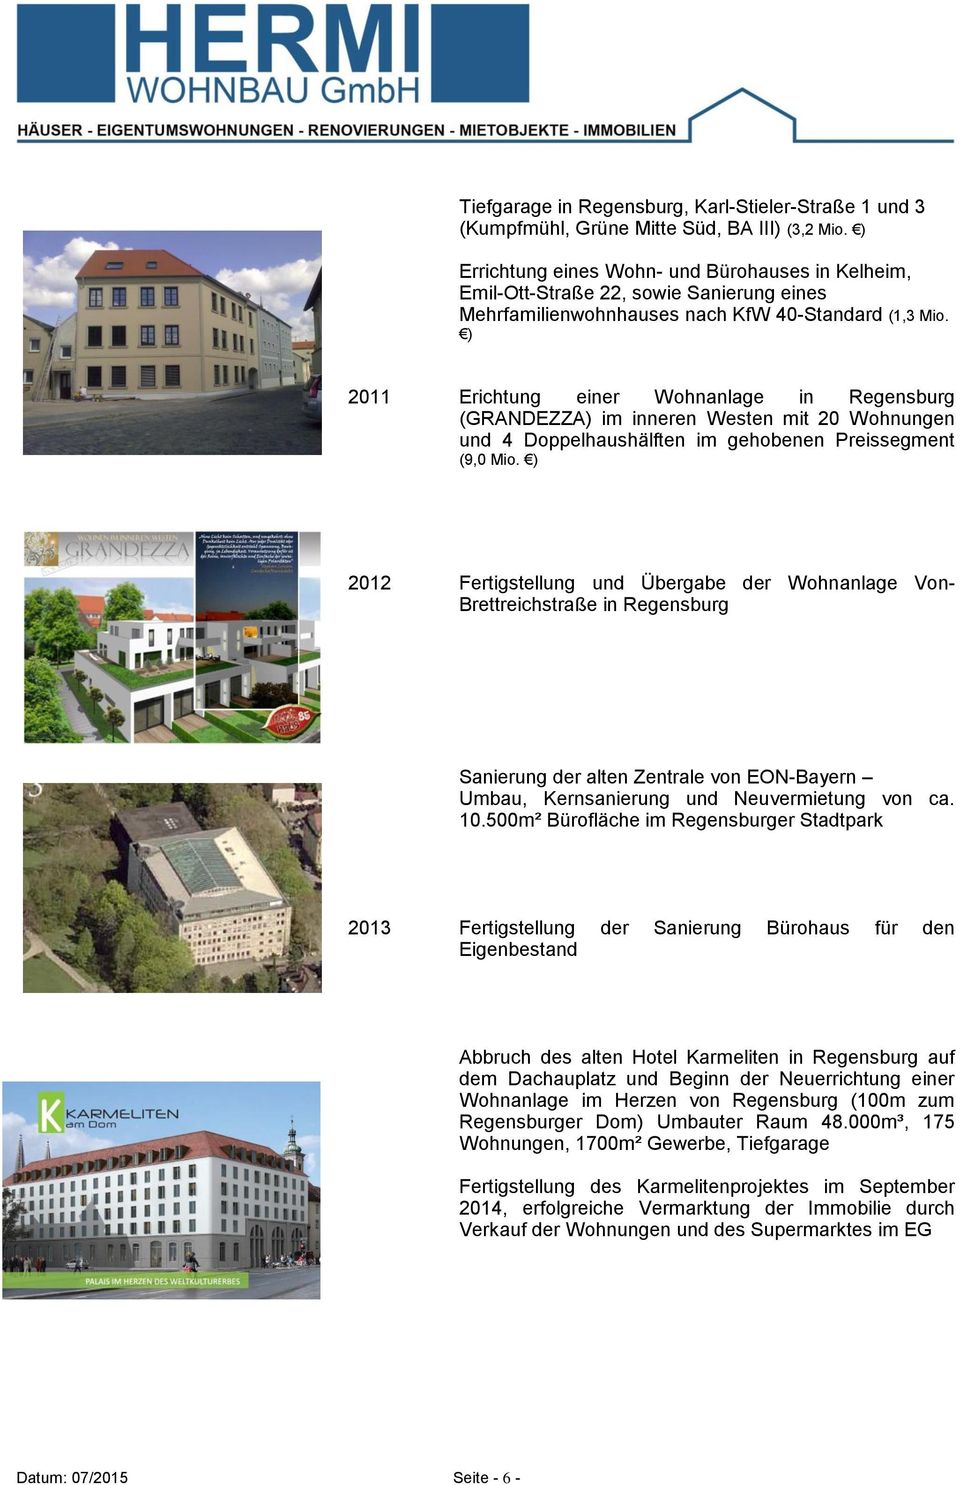 ) 2011 Erichtung einer Wohnanlage in Regensburg (GRANDEZZA) im inneren Westen mit 20 Wohnungen und 4 Doppelhaushälften im gehobenen Preissegment (9,0 Mio.